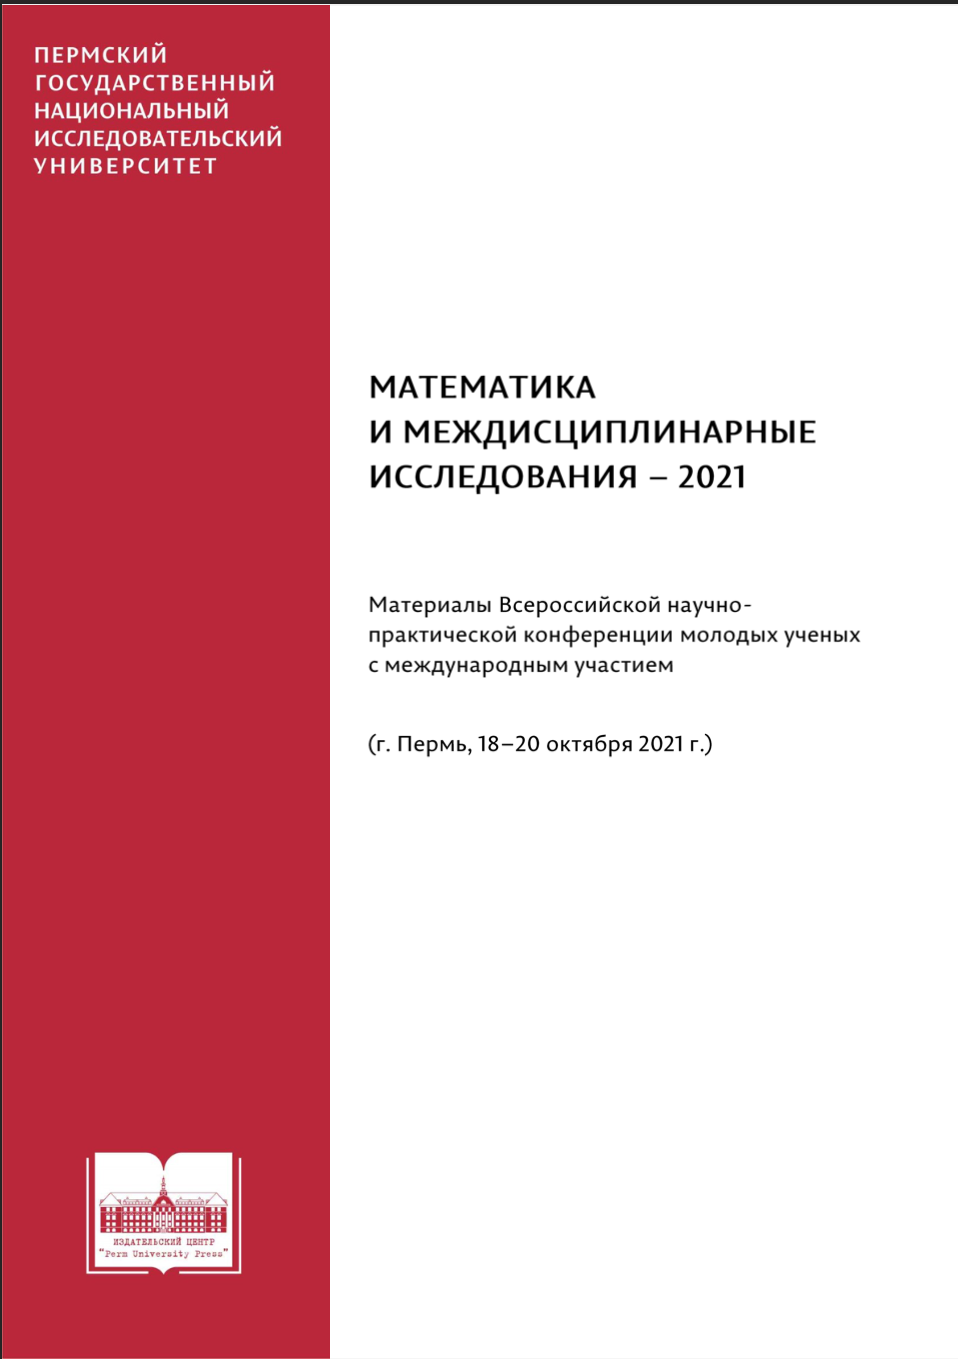 Математика и междисциплинарные исследования – 2021